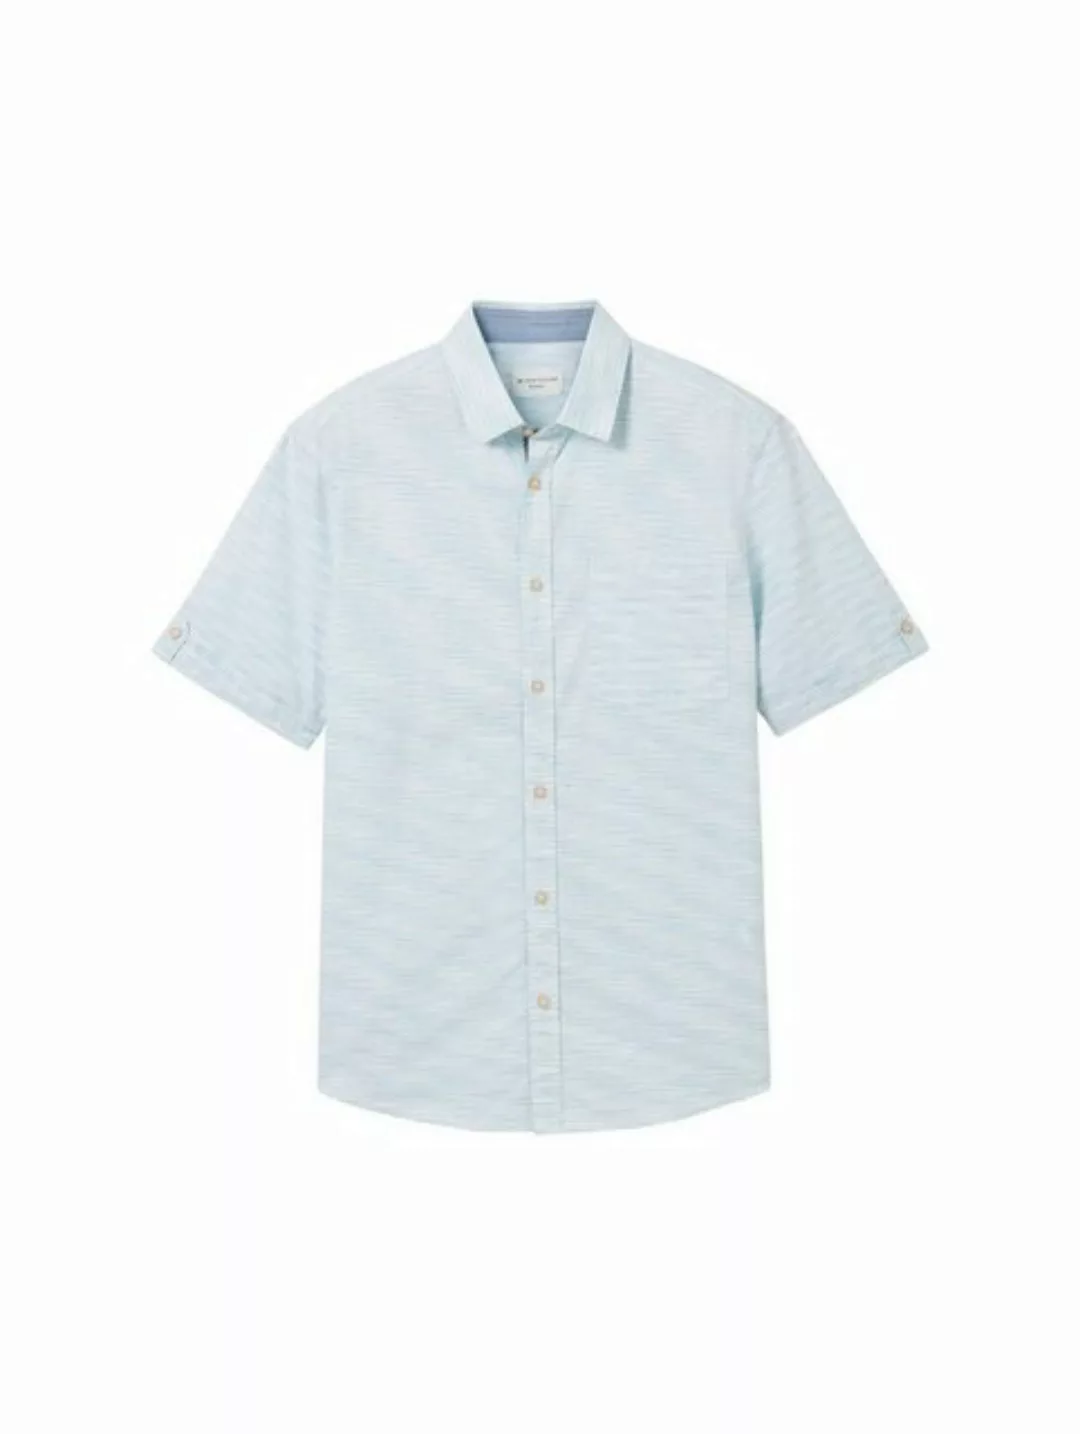 TOM TAILOR T-Shirt structured shirt, teal white irregular structure günstig online kaufen